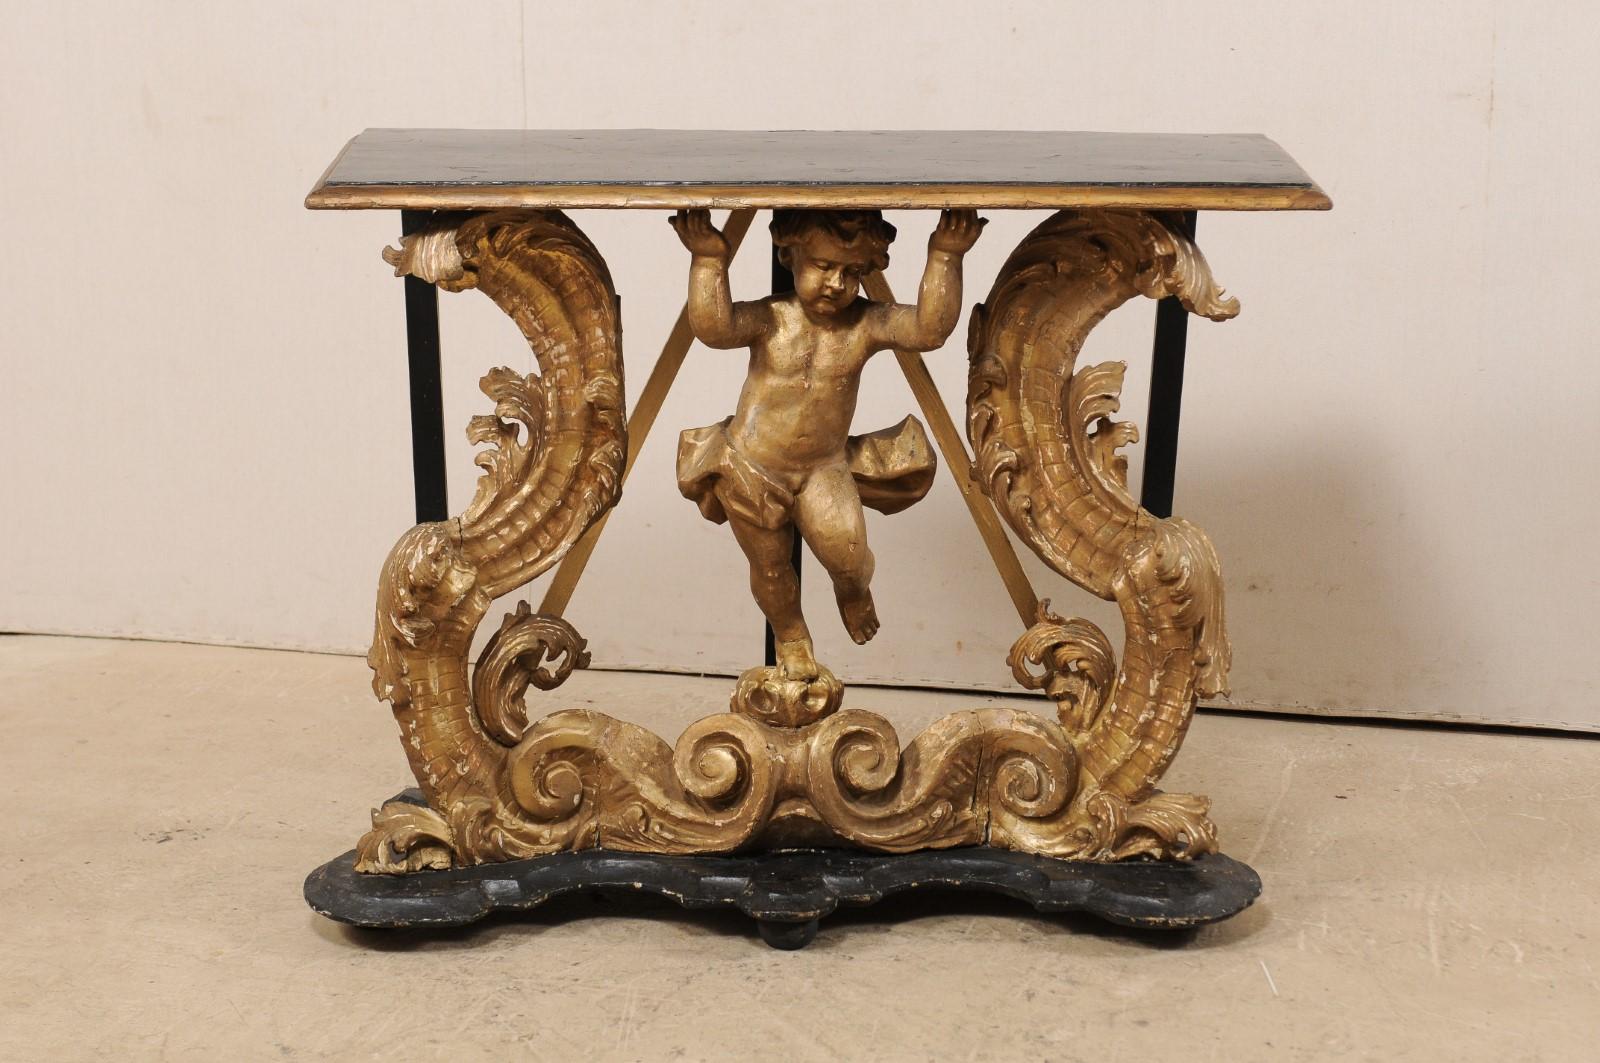 Une exquise table console rococo italienne en bois sculpté et doré avec putto du début du 18ème siècle, peut-être du 17ème siècle. Cette console murale rococo d'Italie présente un putto en bois sculpté à la main en trois dimensions, avec un pagne